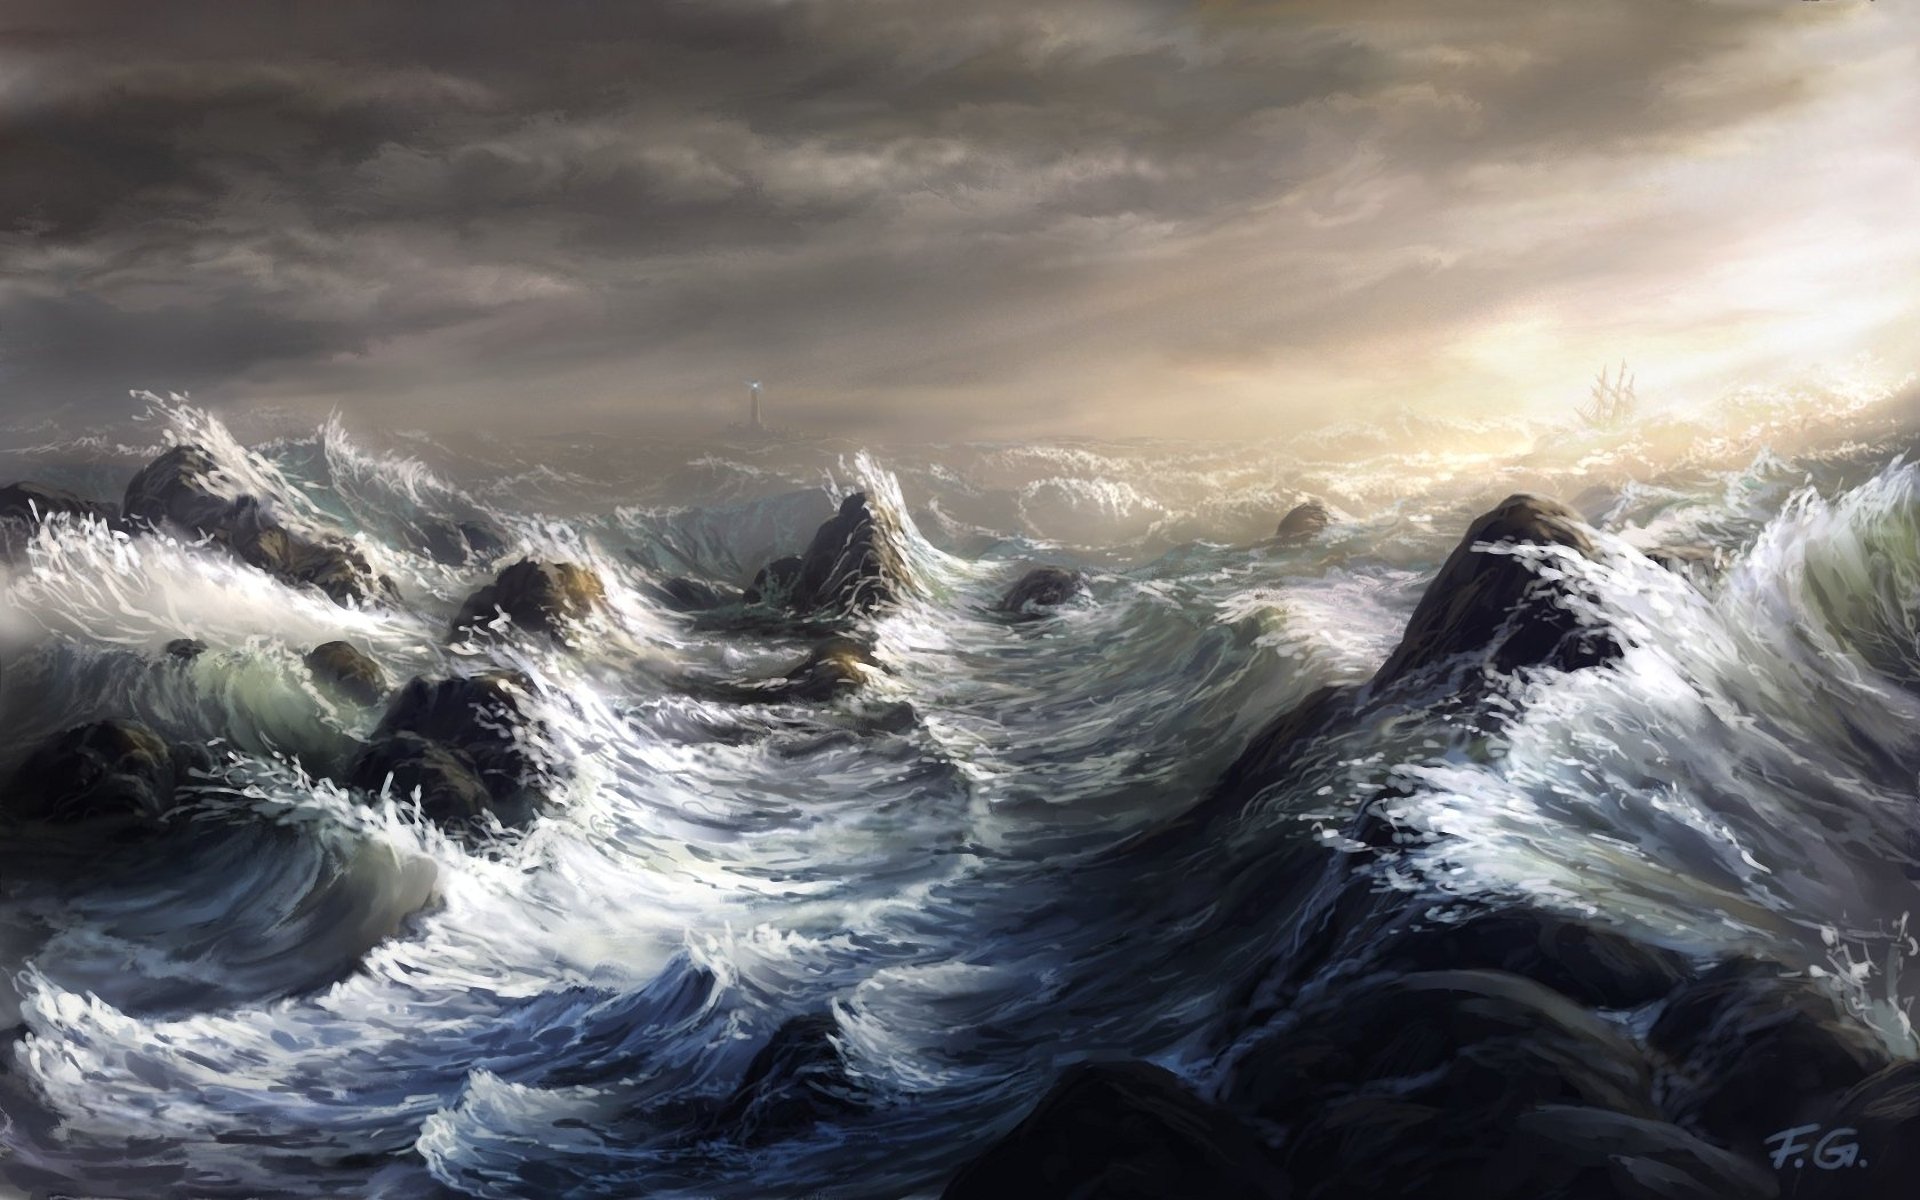 Как ты понимаешь значение шторм. Девятый вал картина Айвазовского. Энди Симмонс пейзаж море шторм. Шторм Энди Симмонс 2007 художник.